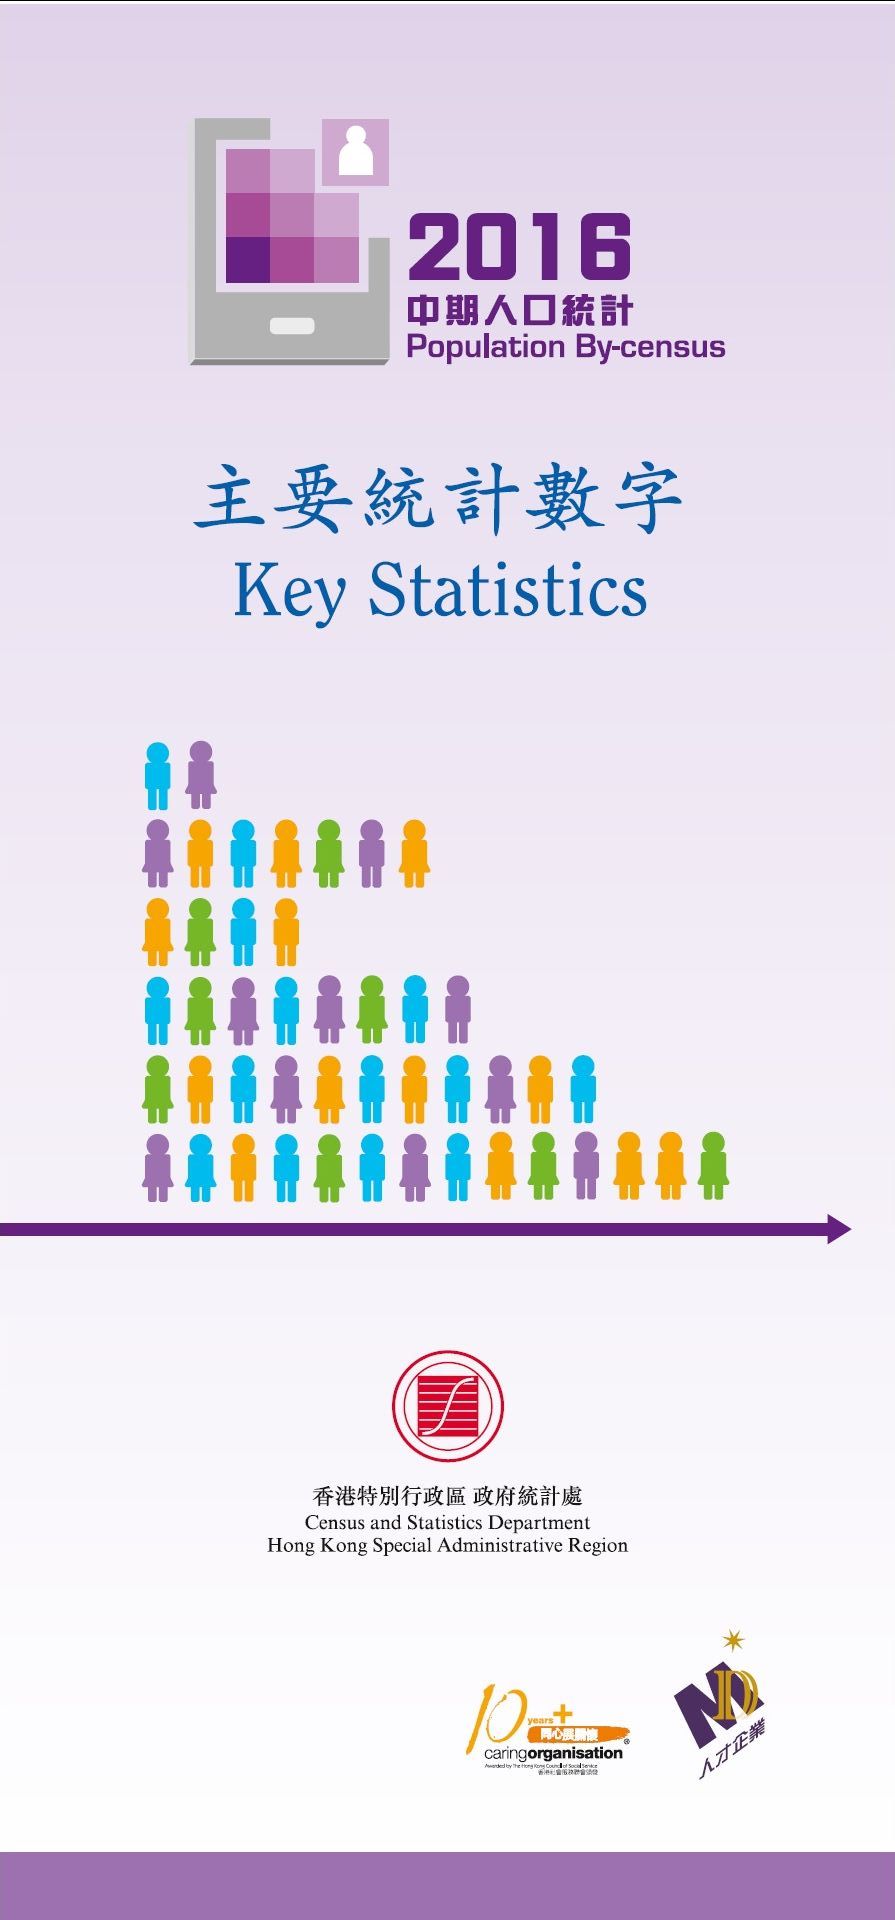 2016年中期人口統計 – 主要統計數字